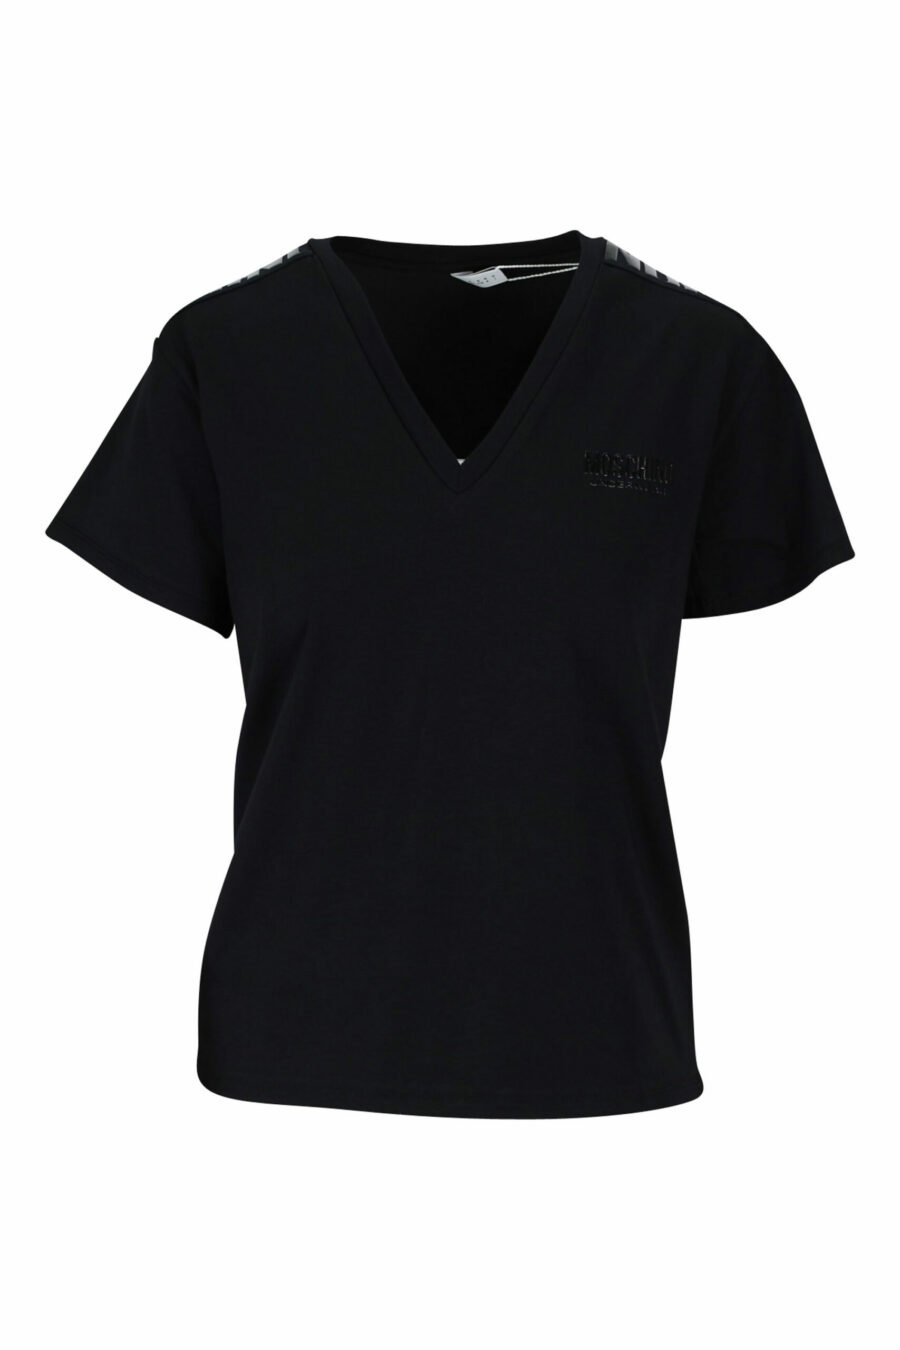 Camiseta negra con cuello en "v" y logo en cinta monocromático - 889316614954 scaled